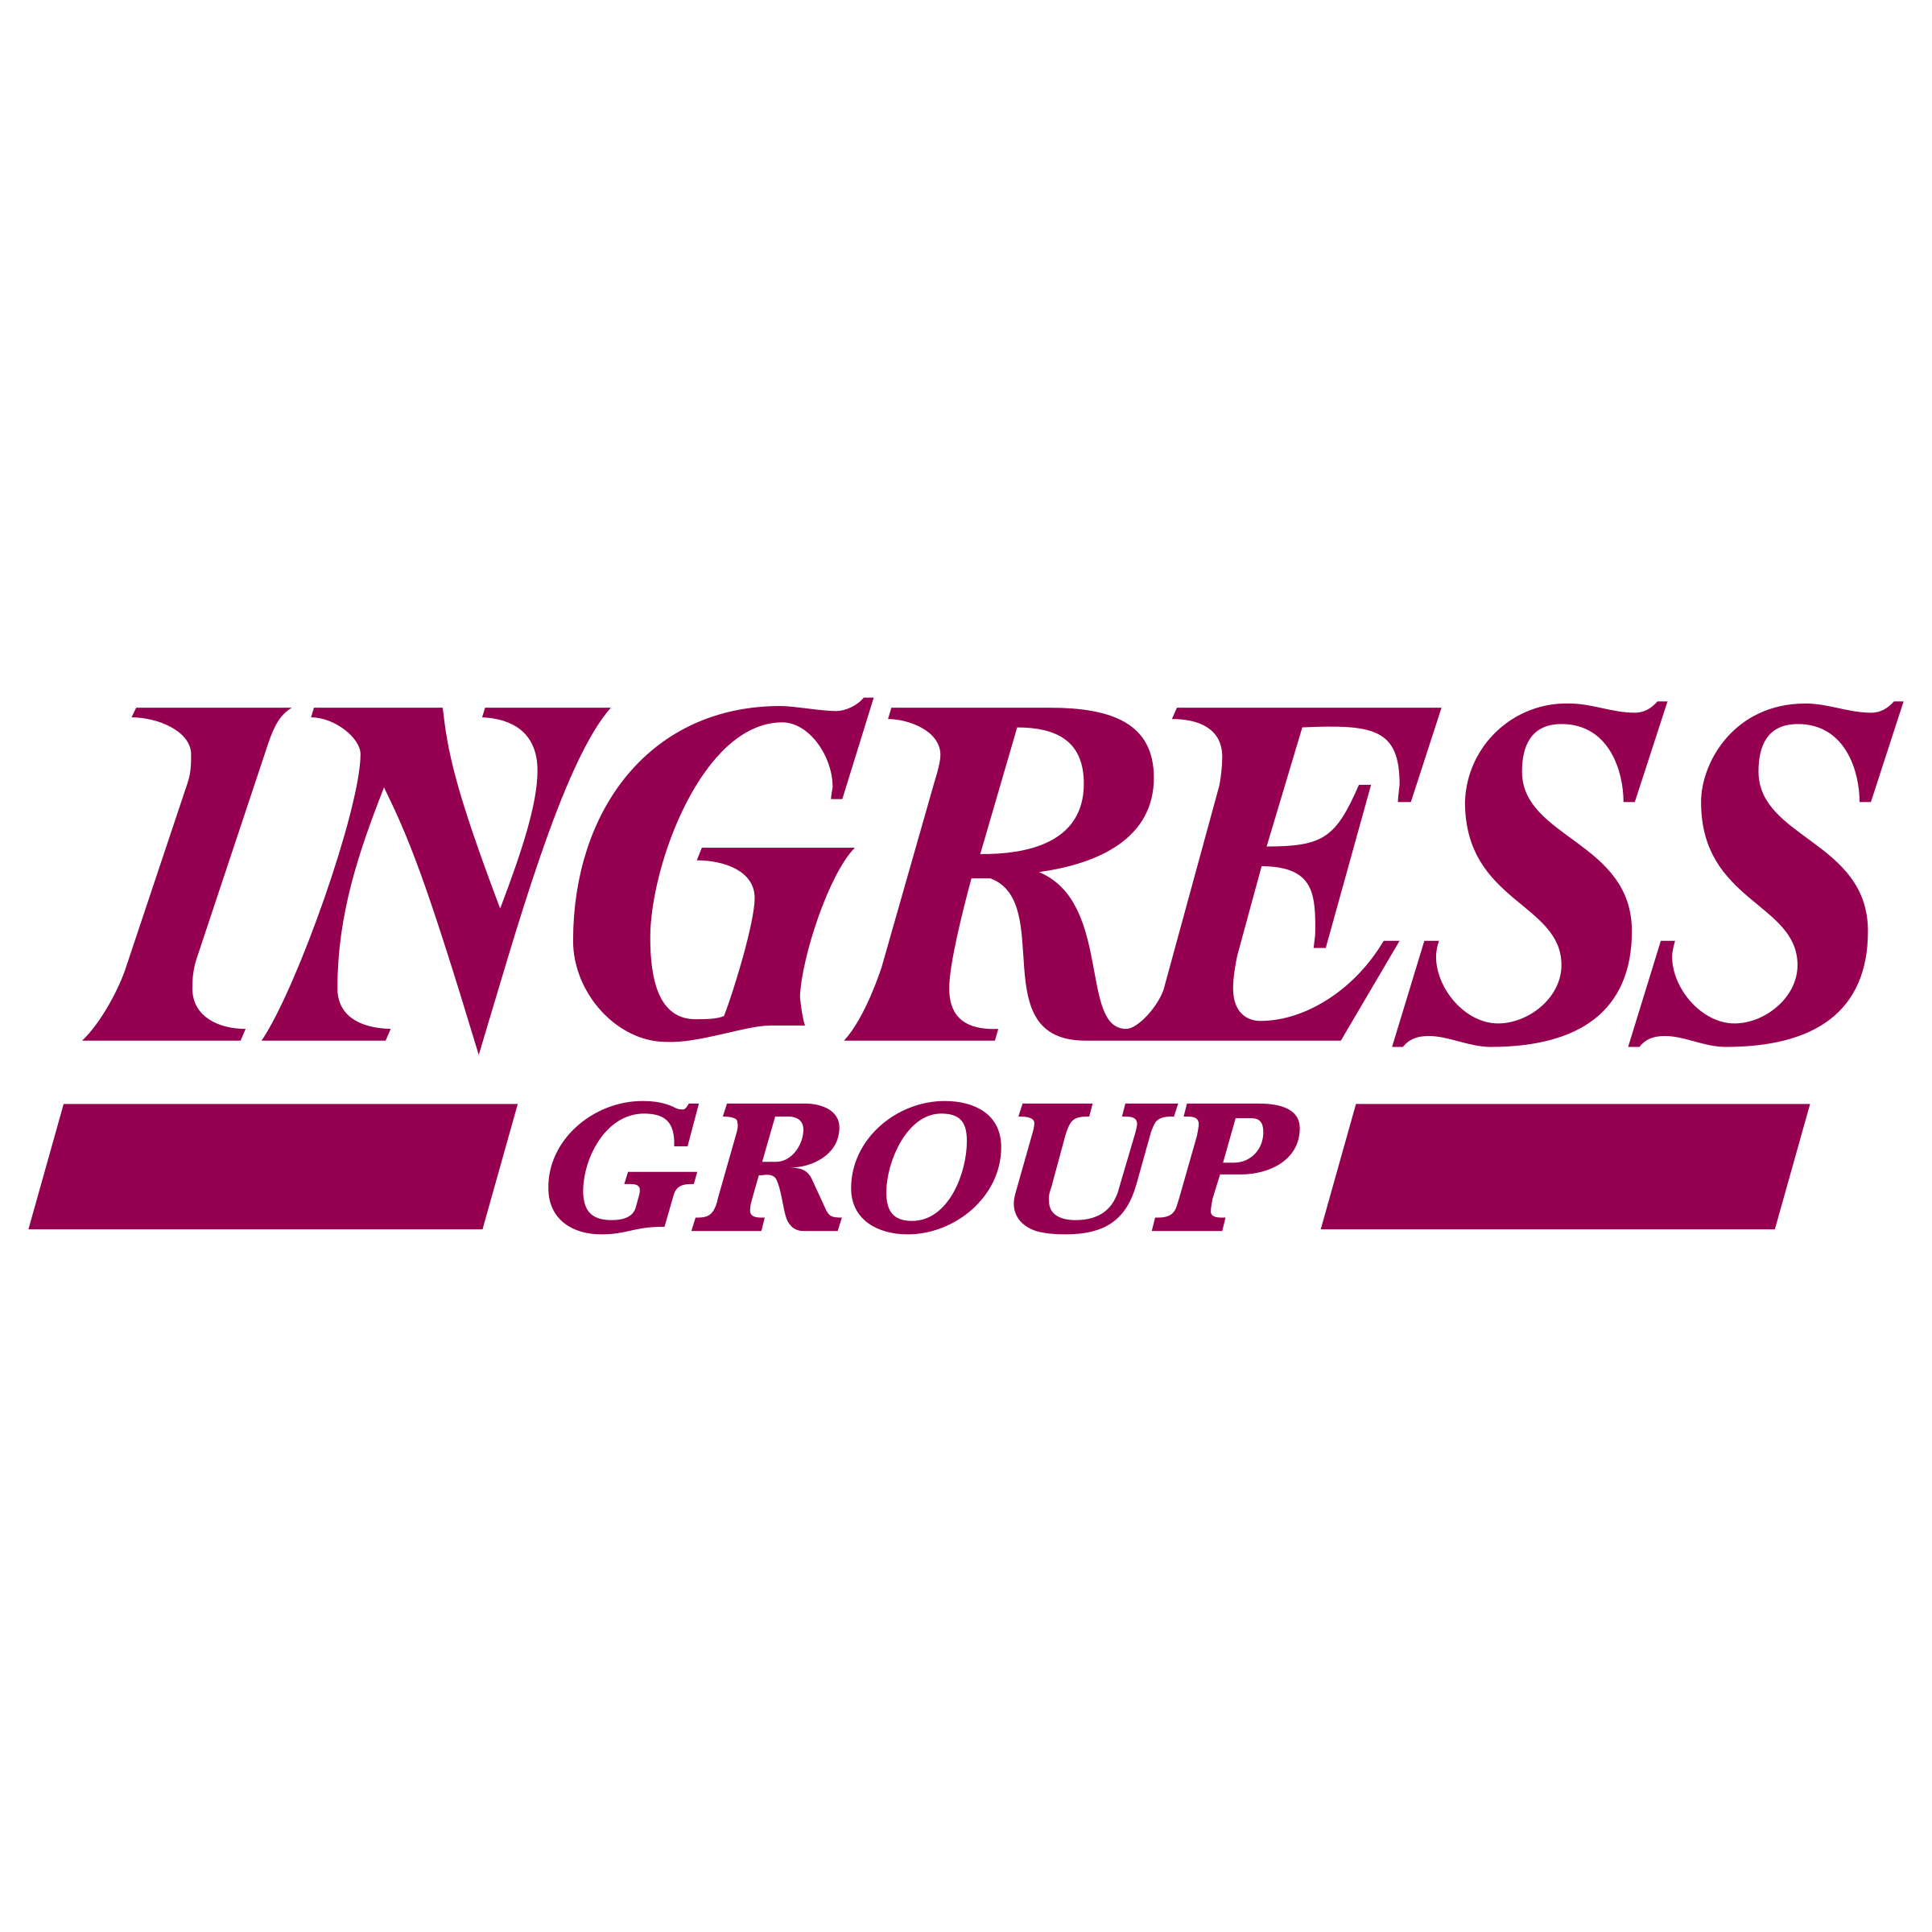 Intrawest Logo - Ingress Group Logo PNG Transparent & SVG Vector